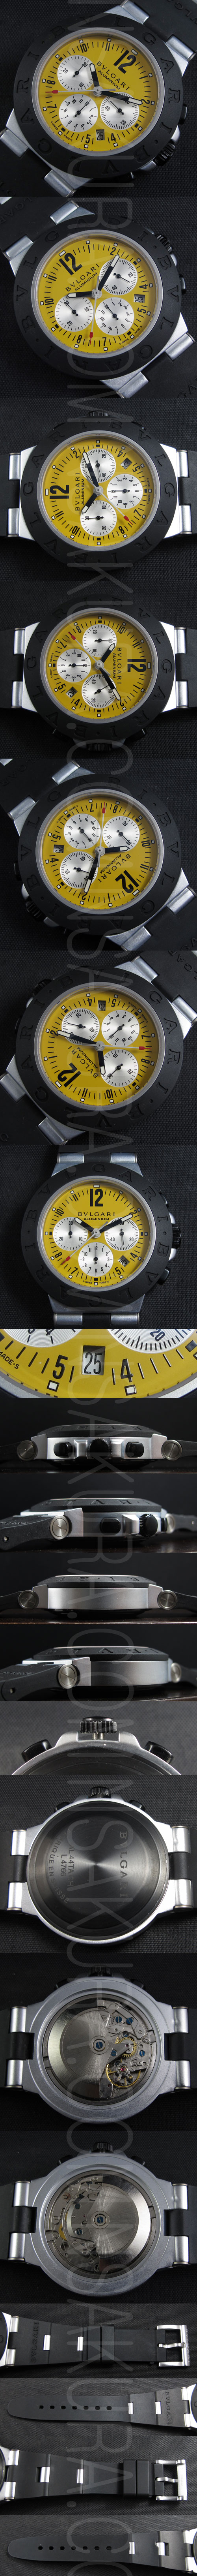 レプリカ時計ブルガリ ディアゴノ クロノグラフ Asian 7751搭載 28800振動 - ウインドウを閉じる